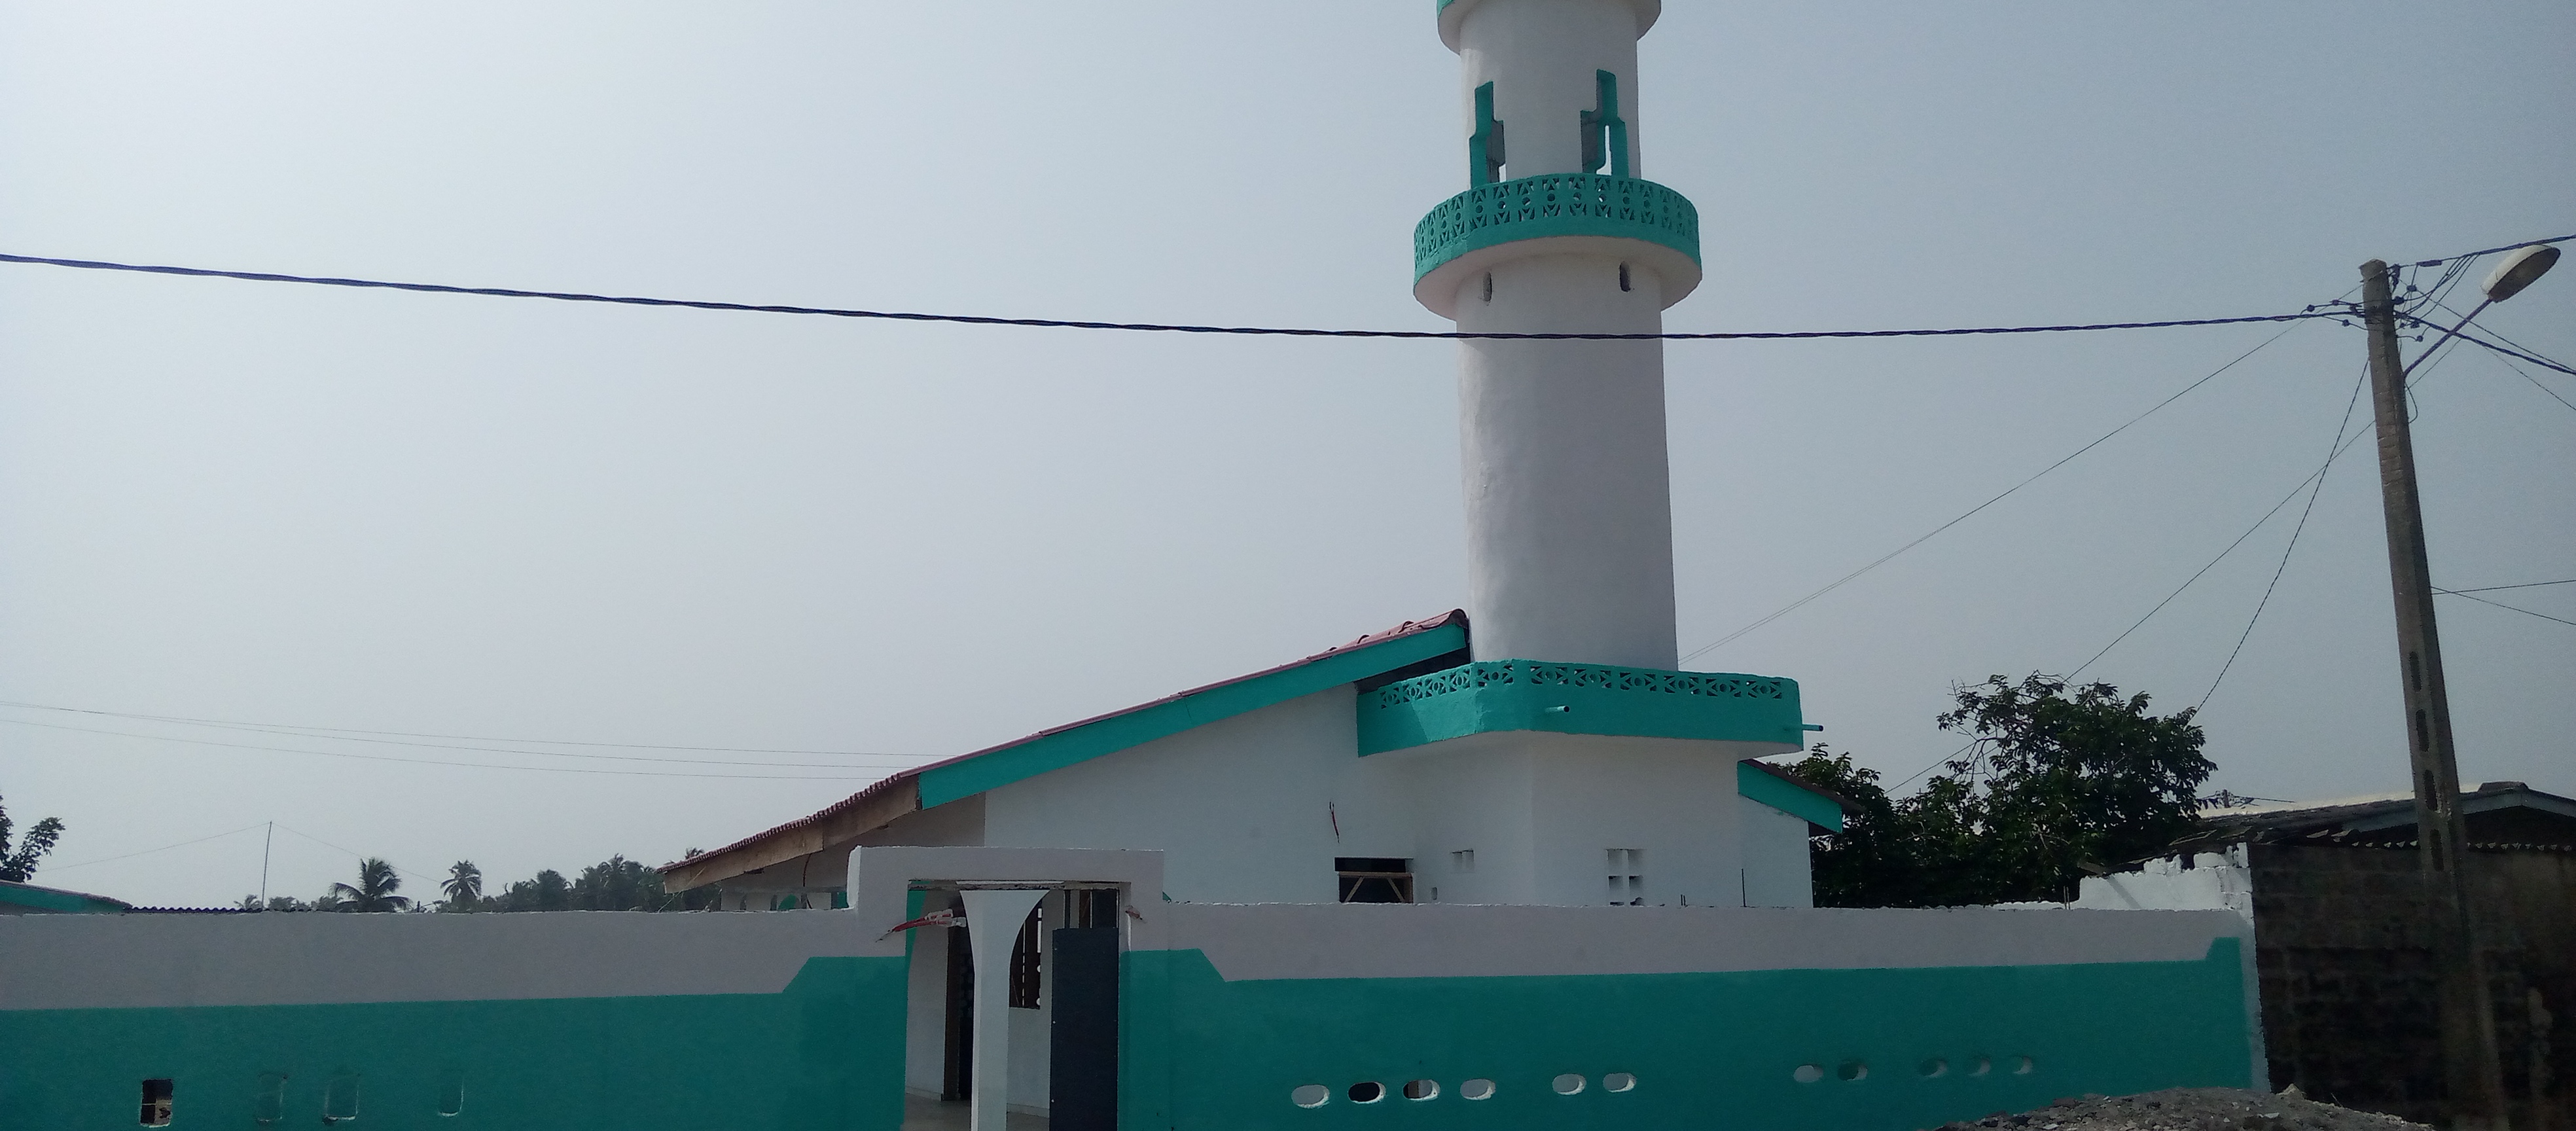 Commune de Jacqueville : Le maire offre deux mosquées à la communauté musulmane